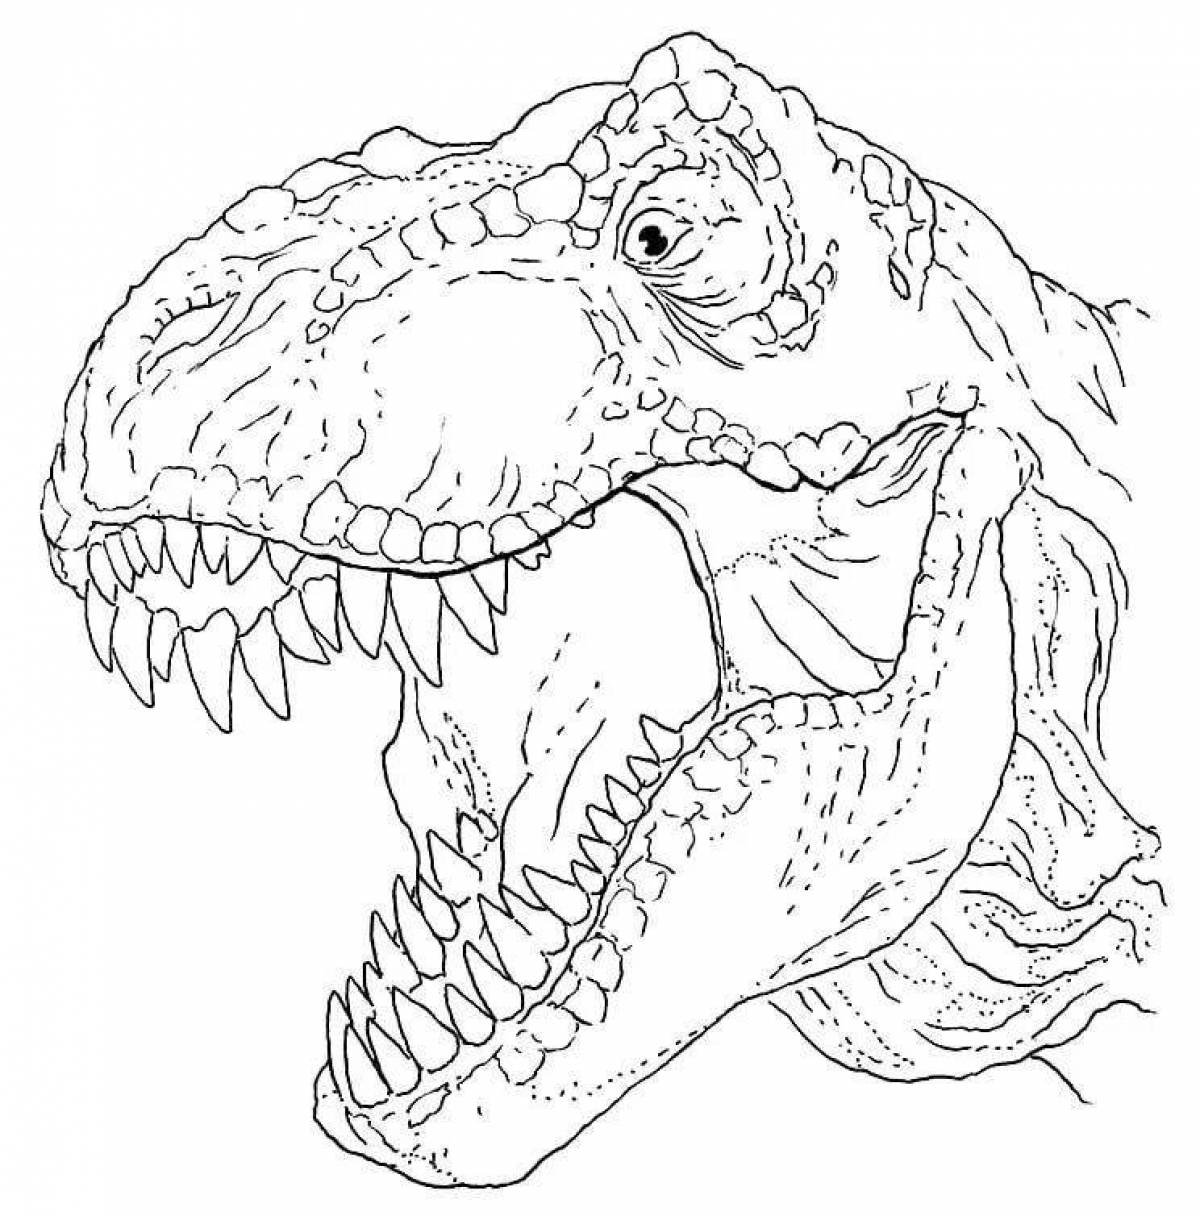 Fun coloring tarbosaurus forward